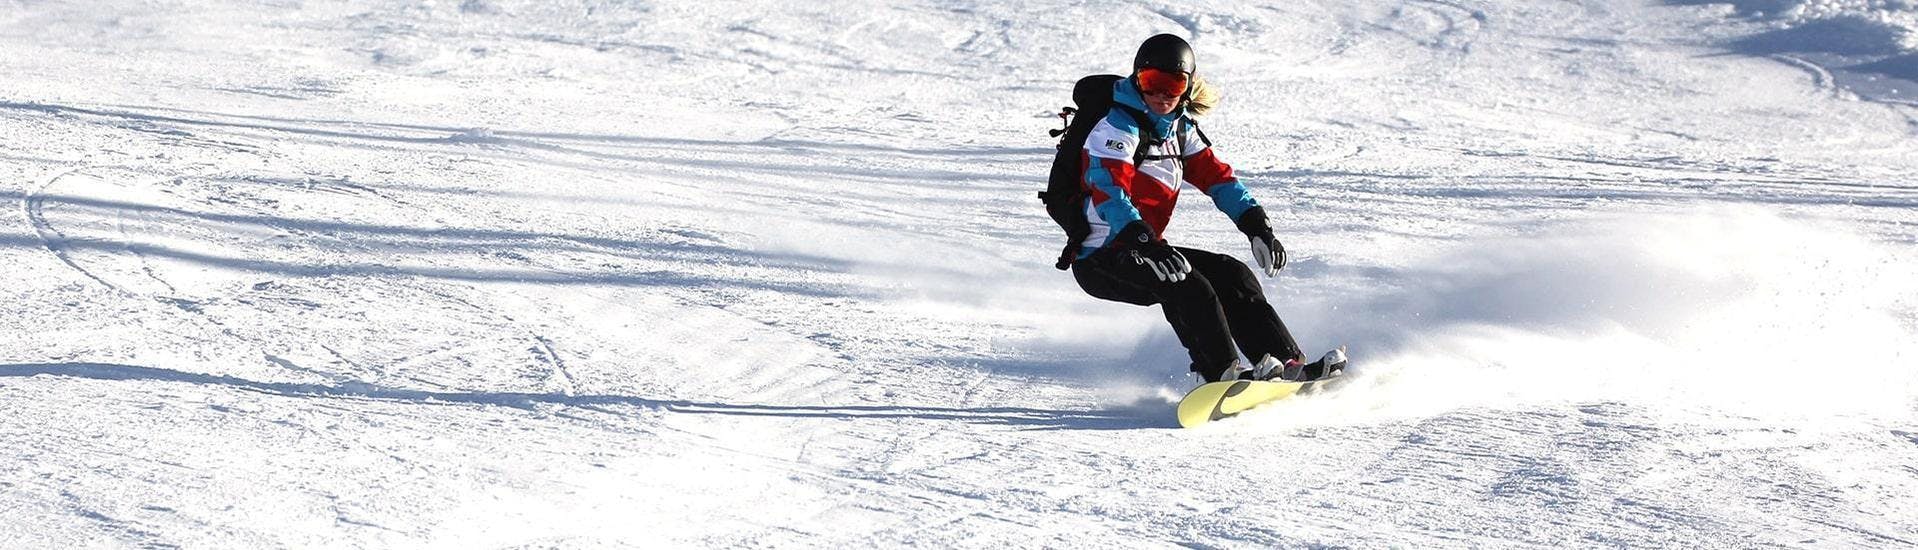 Une snowboardeuse descend une pente ensoleillée pendant un de ses cours de snowboard pour enfants et adultes - journée complète - niveau expérimenté dans la station de ski d'Ischgl.